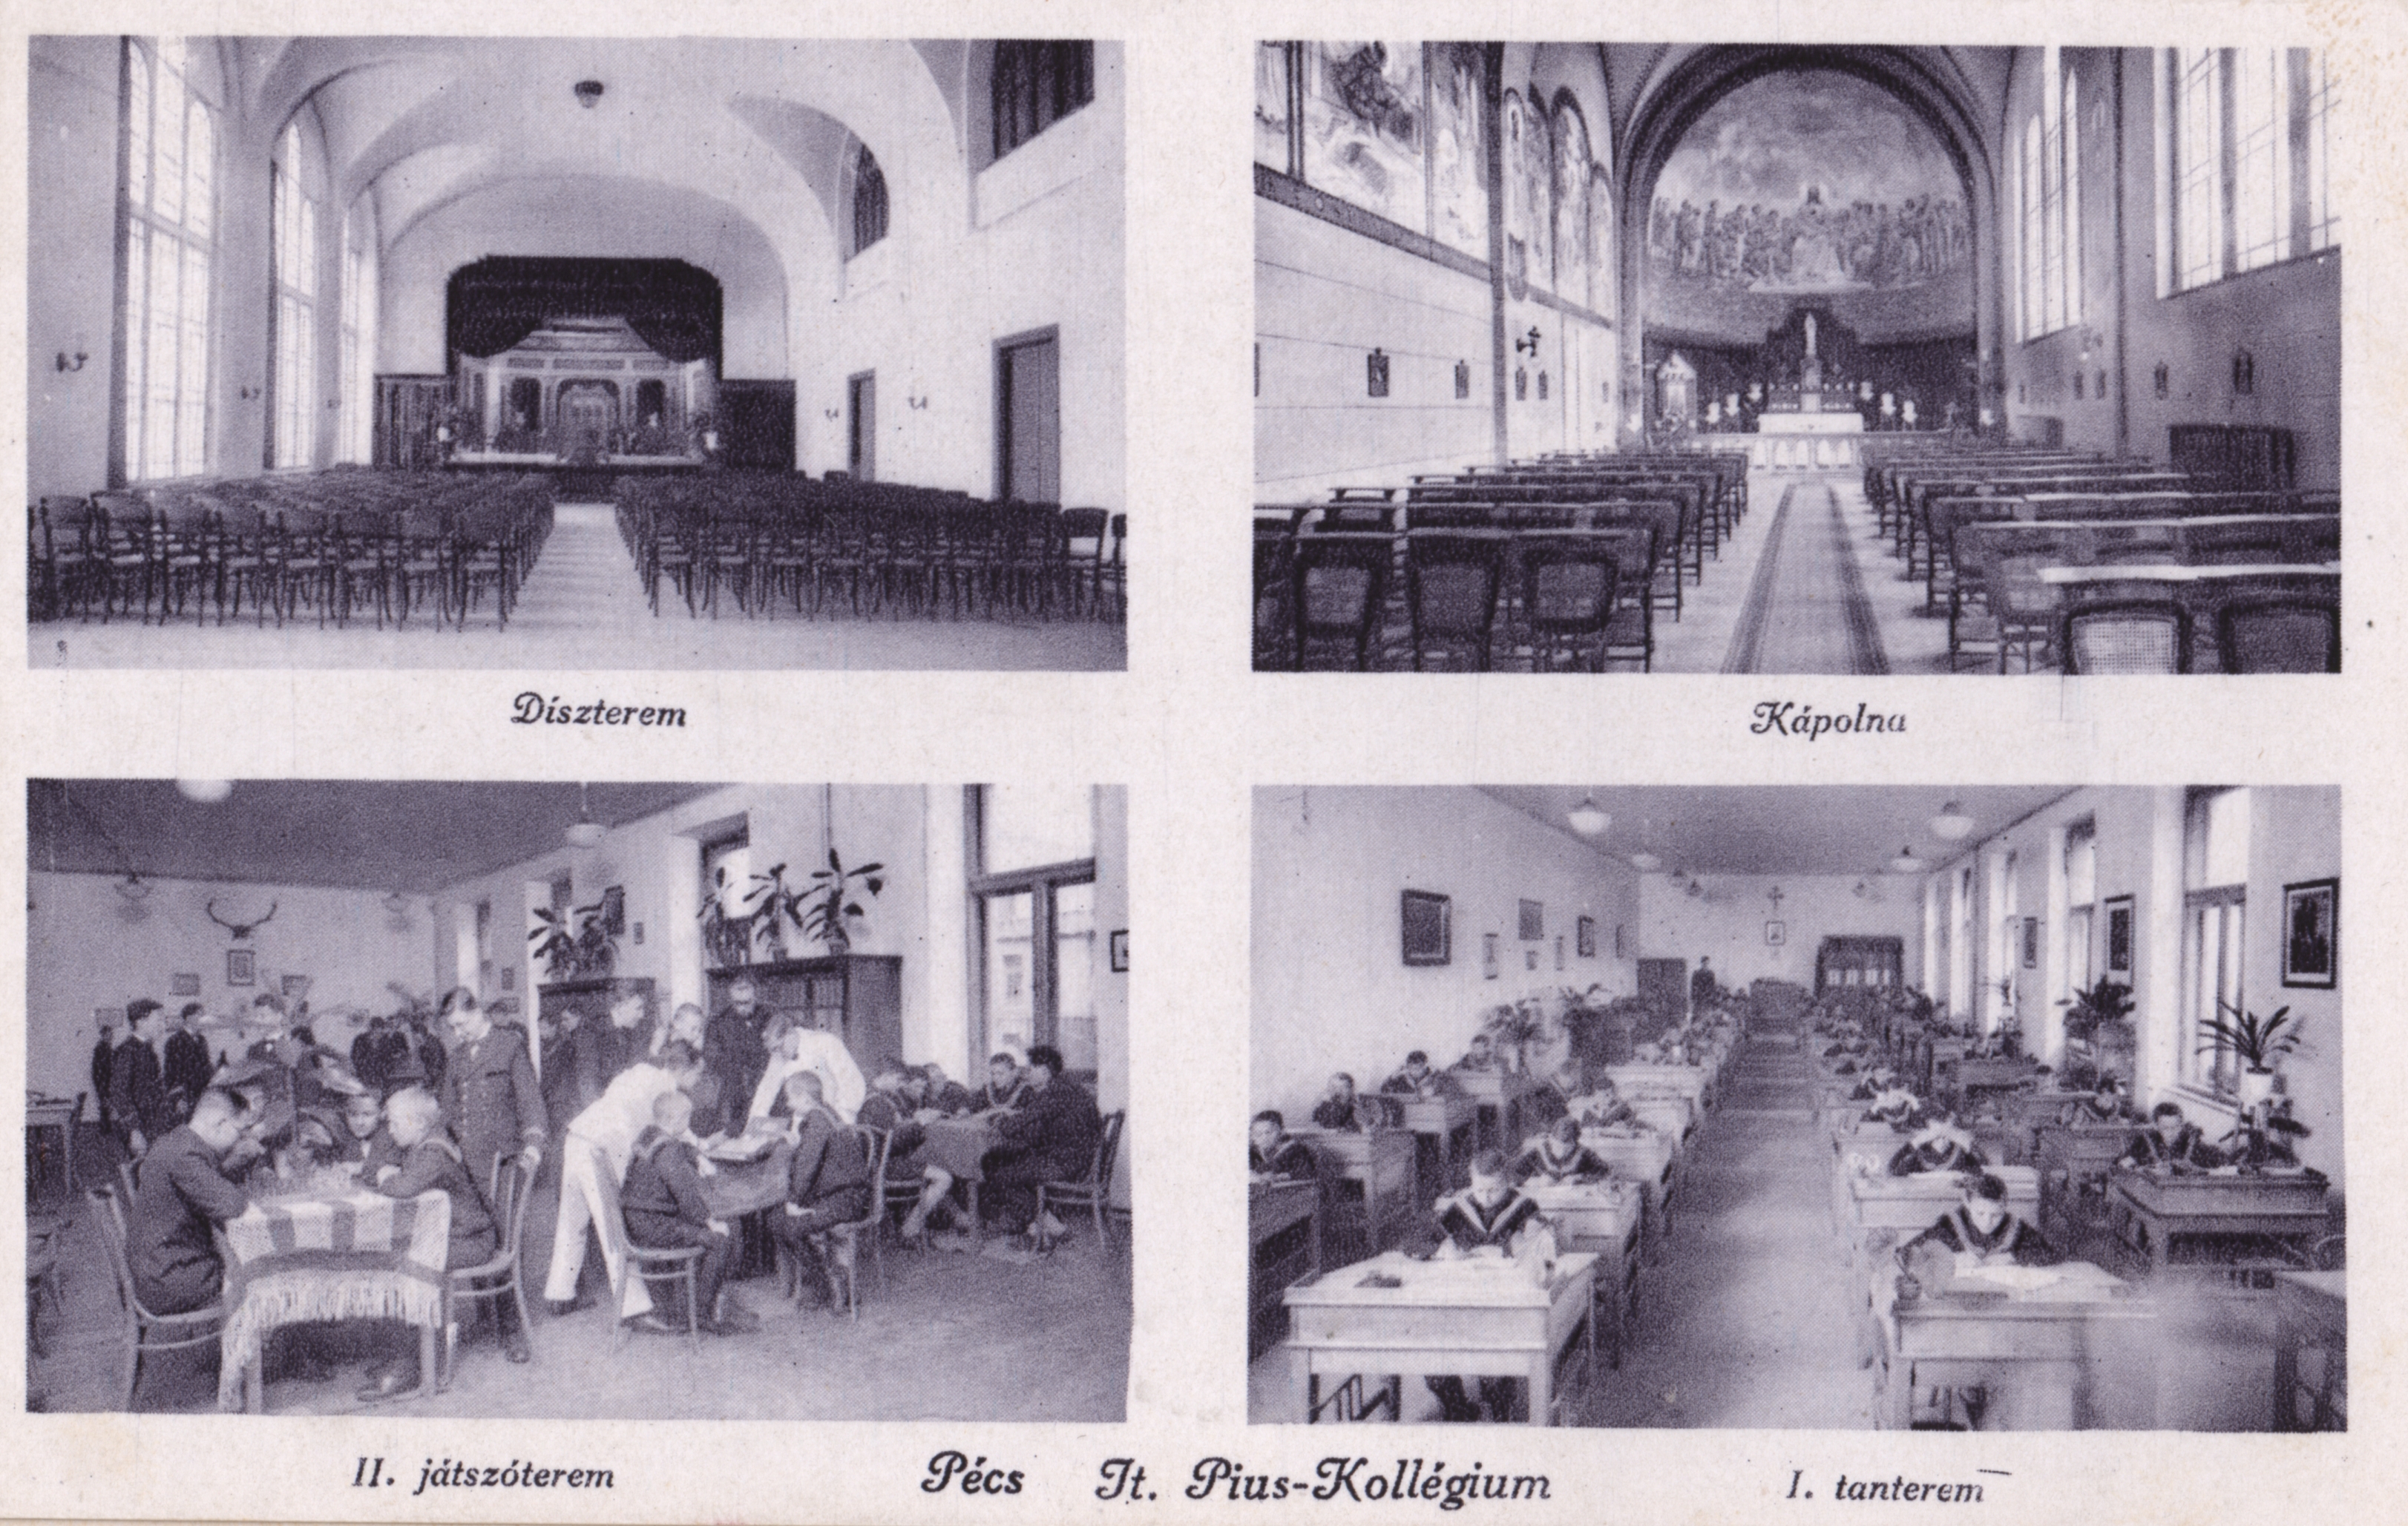 Pécs Jt. Pius-Kollégium - kollégium belsők